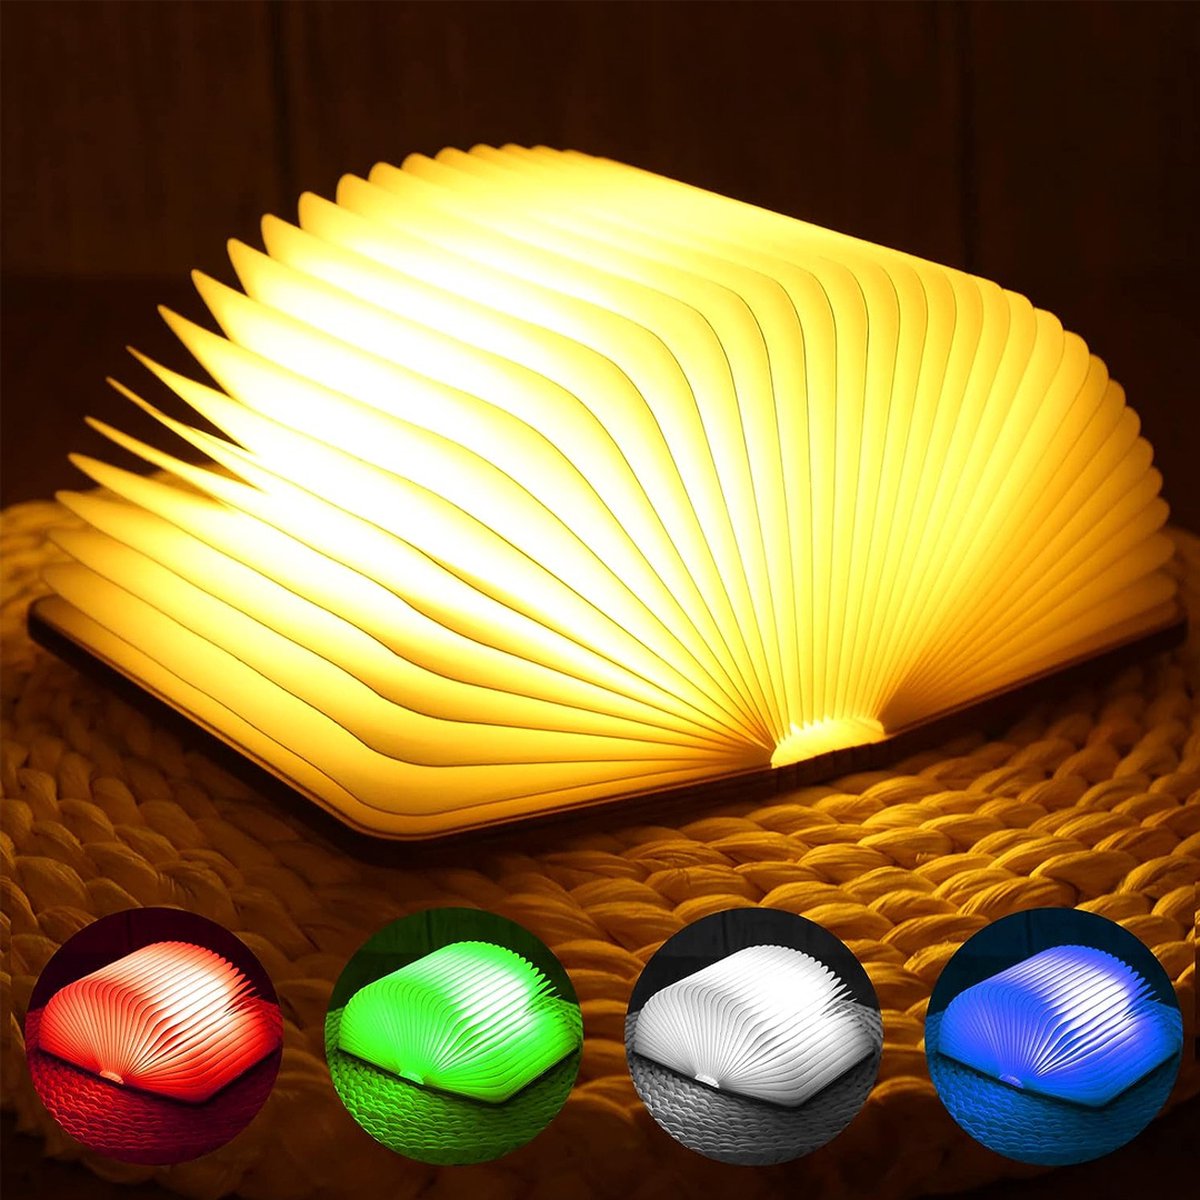 VB Boeklamp – Tafellamp Slaapkamer met 6 verschillende kleuren – Sfeerverlichting – Book Light – Nachtlamp USB oplaadbaar – Vloerlamp – Wandlamp - ‎12 x 9 x 2,5 cm